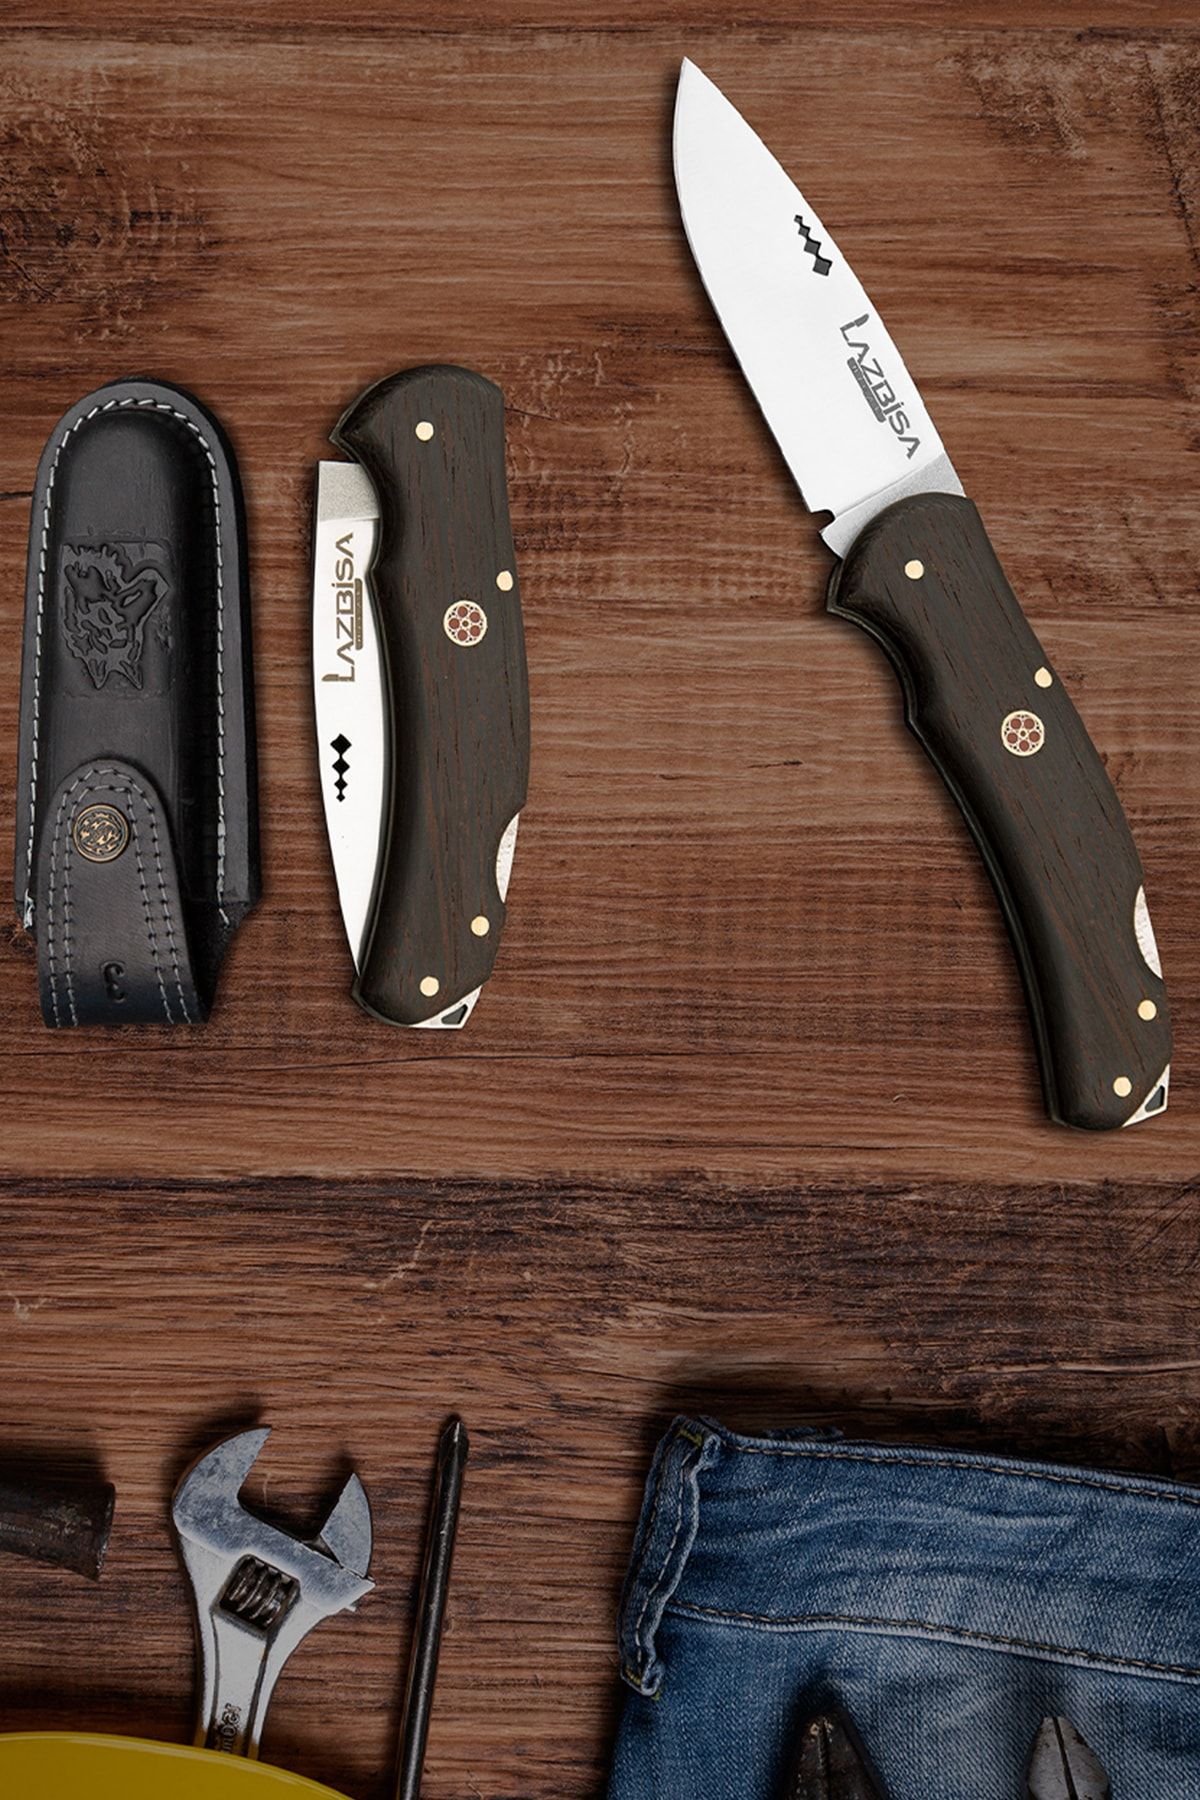 LAZBİSA Mutfak Bıçak Çakı Kamp Bıçağı Outdoor Bıçak Kılıf Hediyeli El Yapımı ( 21 Cm )